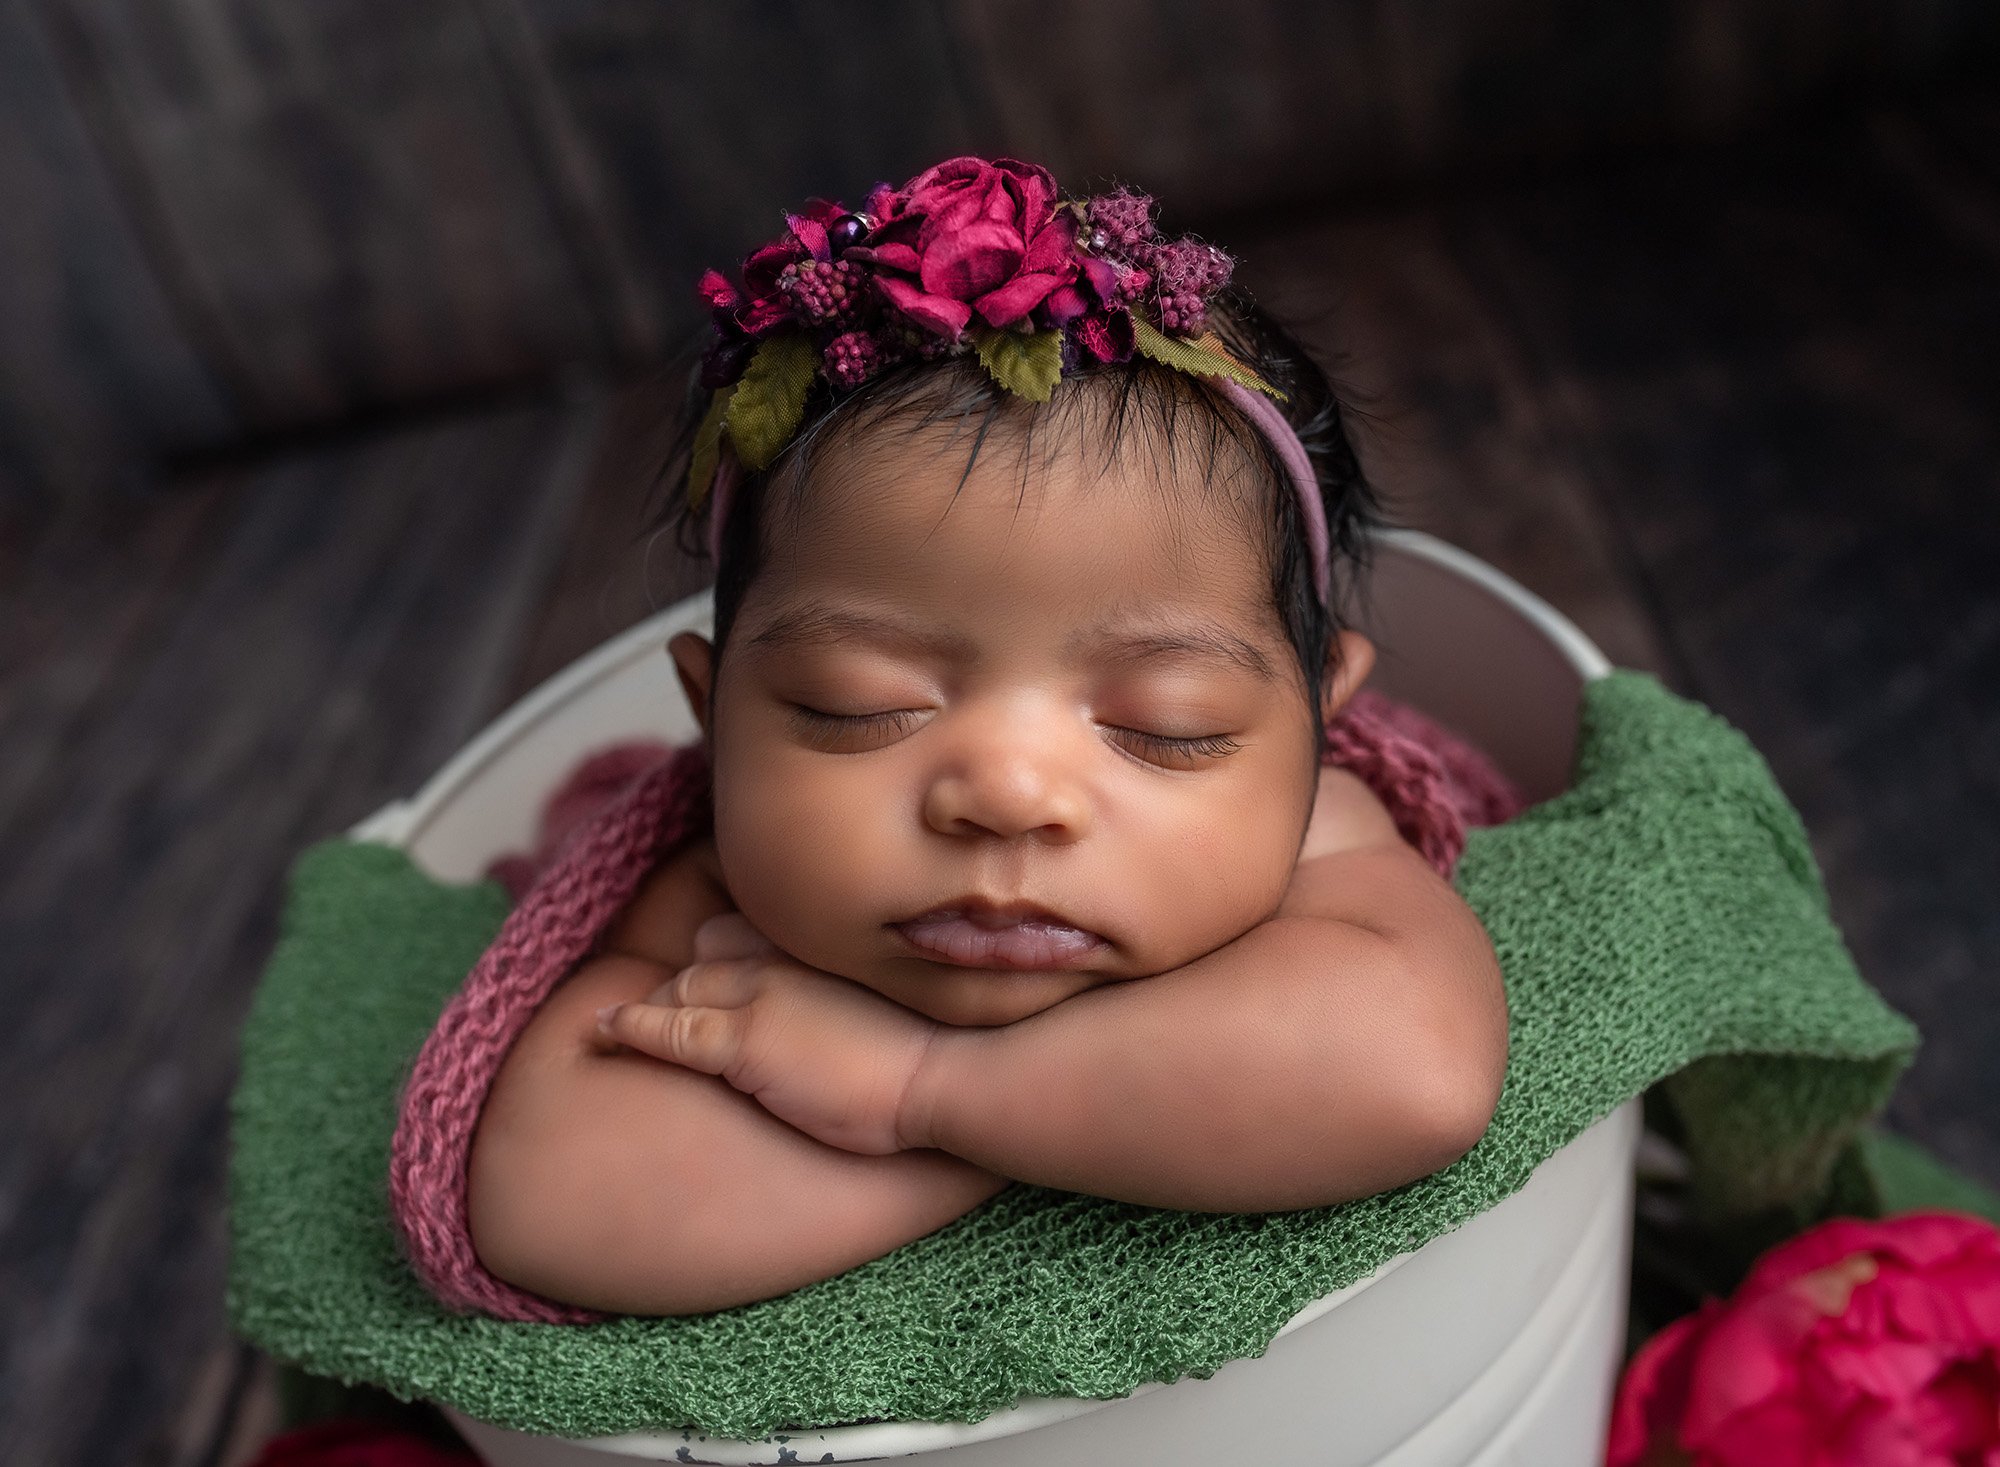 newborn baby girl wearing deep pink floral headband asleep in a bucket